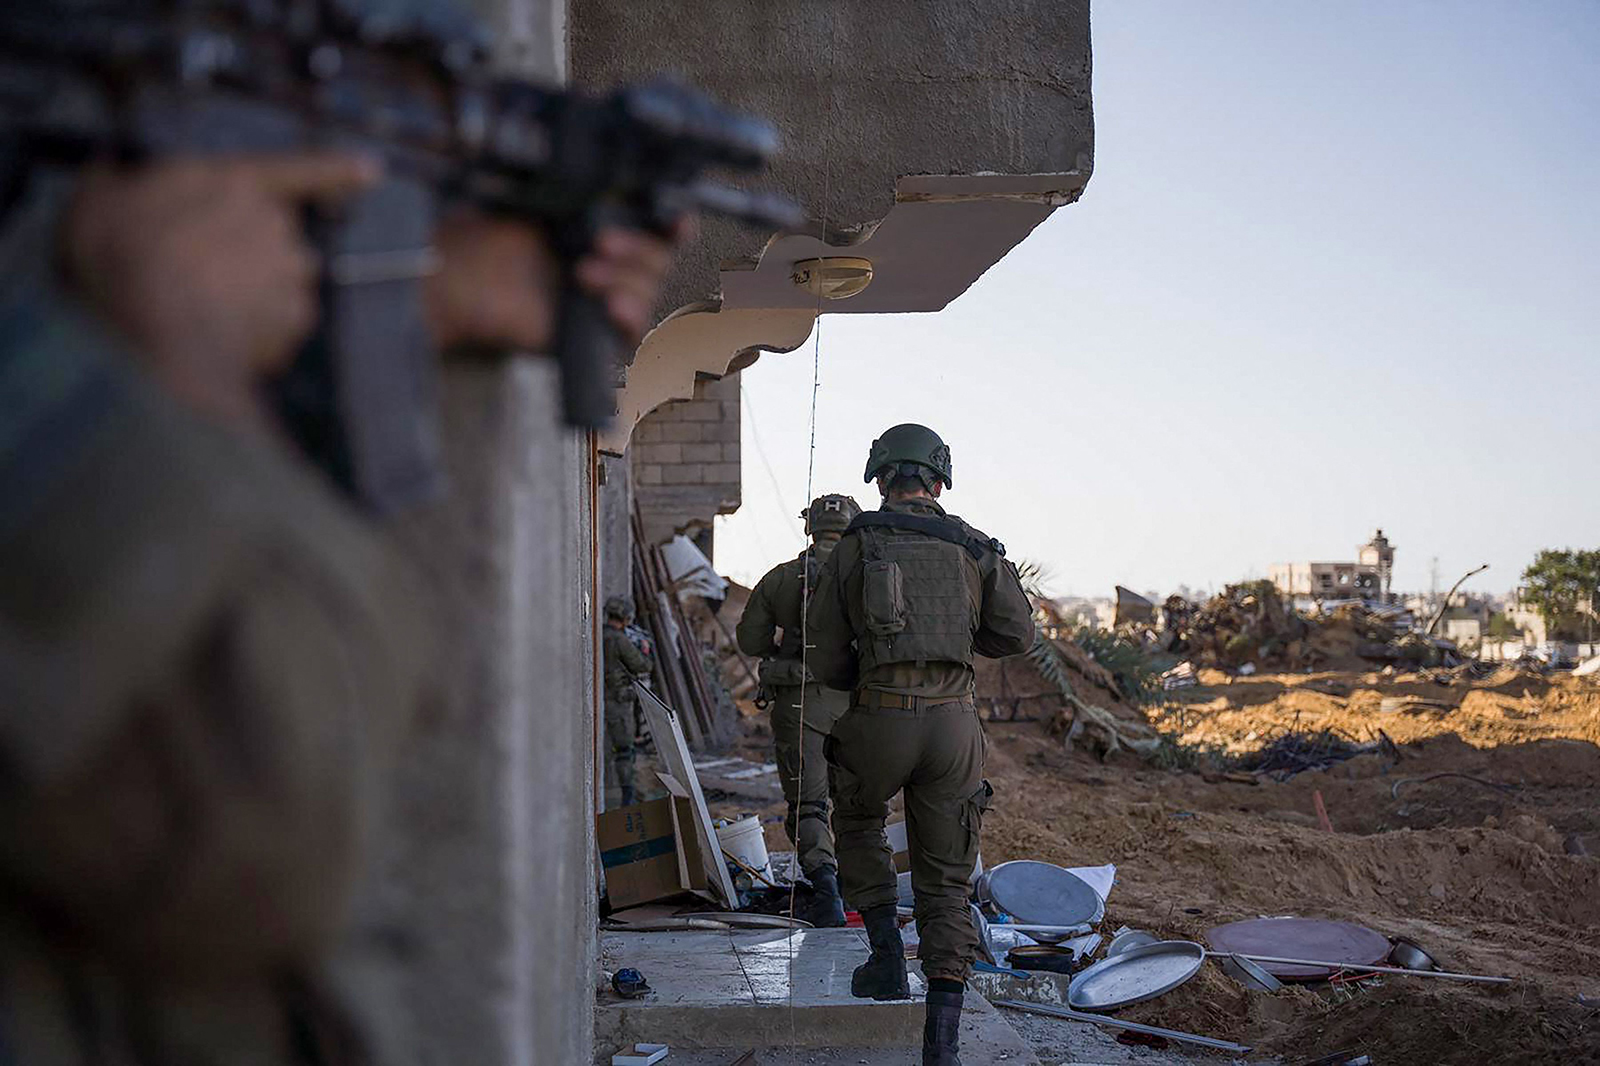 الجيش الإسرائيلي يكشف الحقيقة الصادمة وراء مقتل خمسة جنود في غزة: "نيران صديقة" تثير جدلاً واسعاً